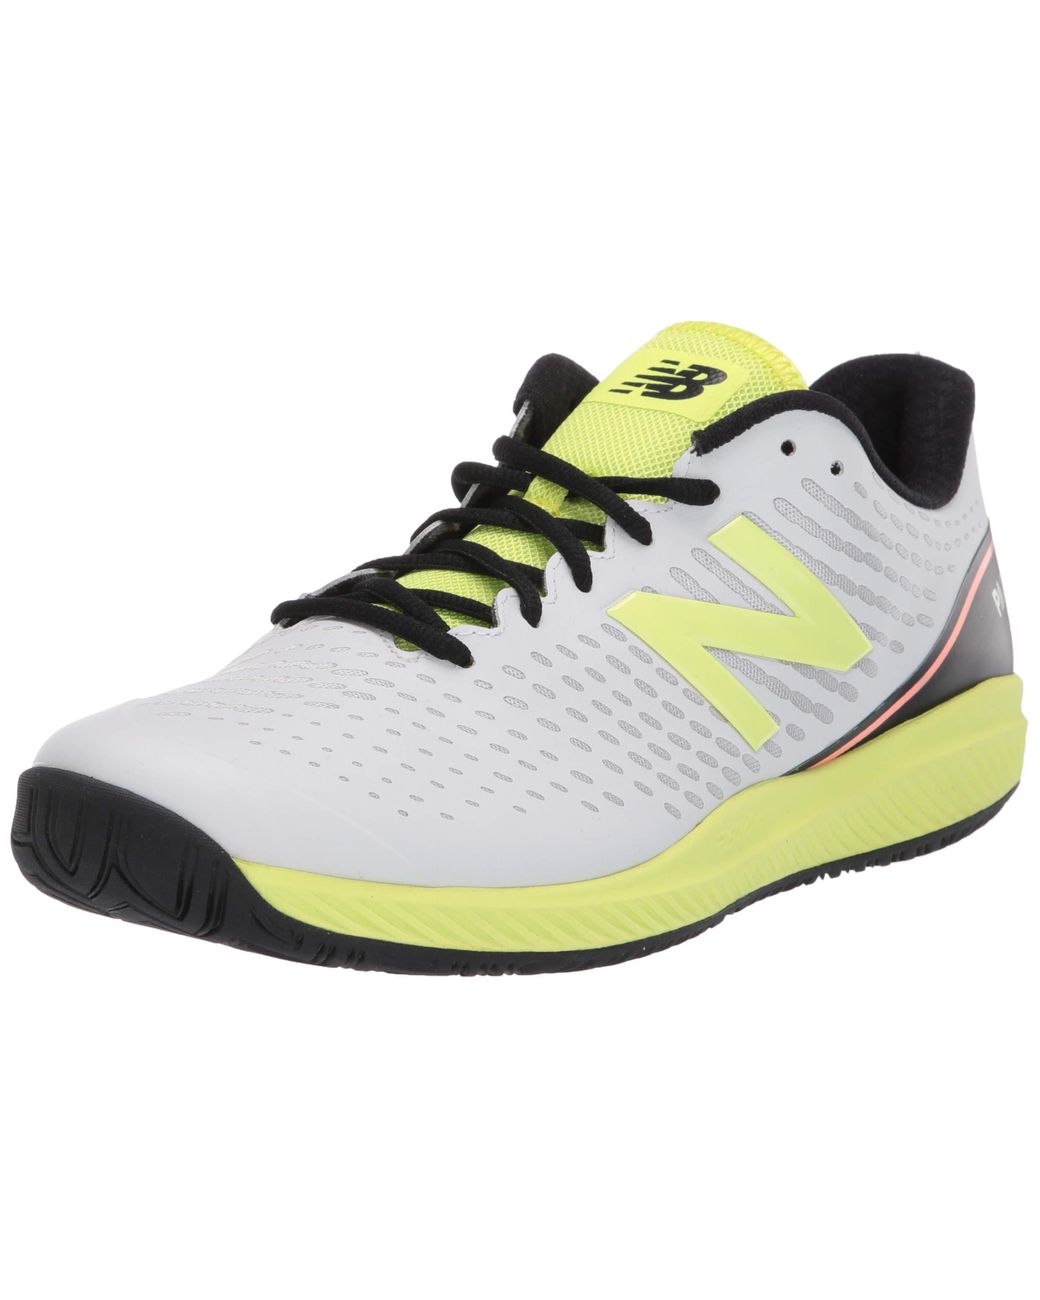 New Balance 796 V2 Hard Court Tennis Shoe for Men - Save 7 